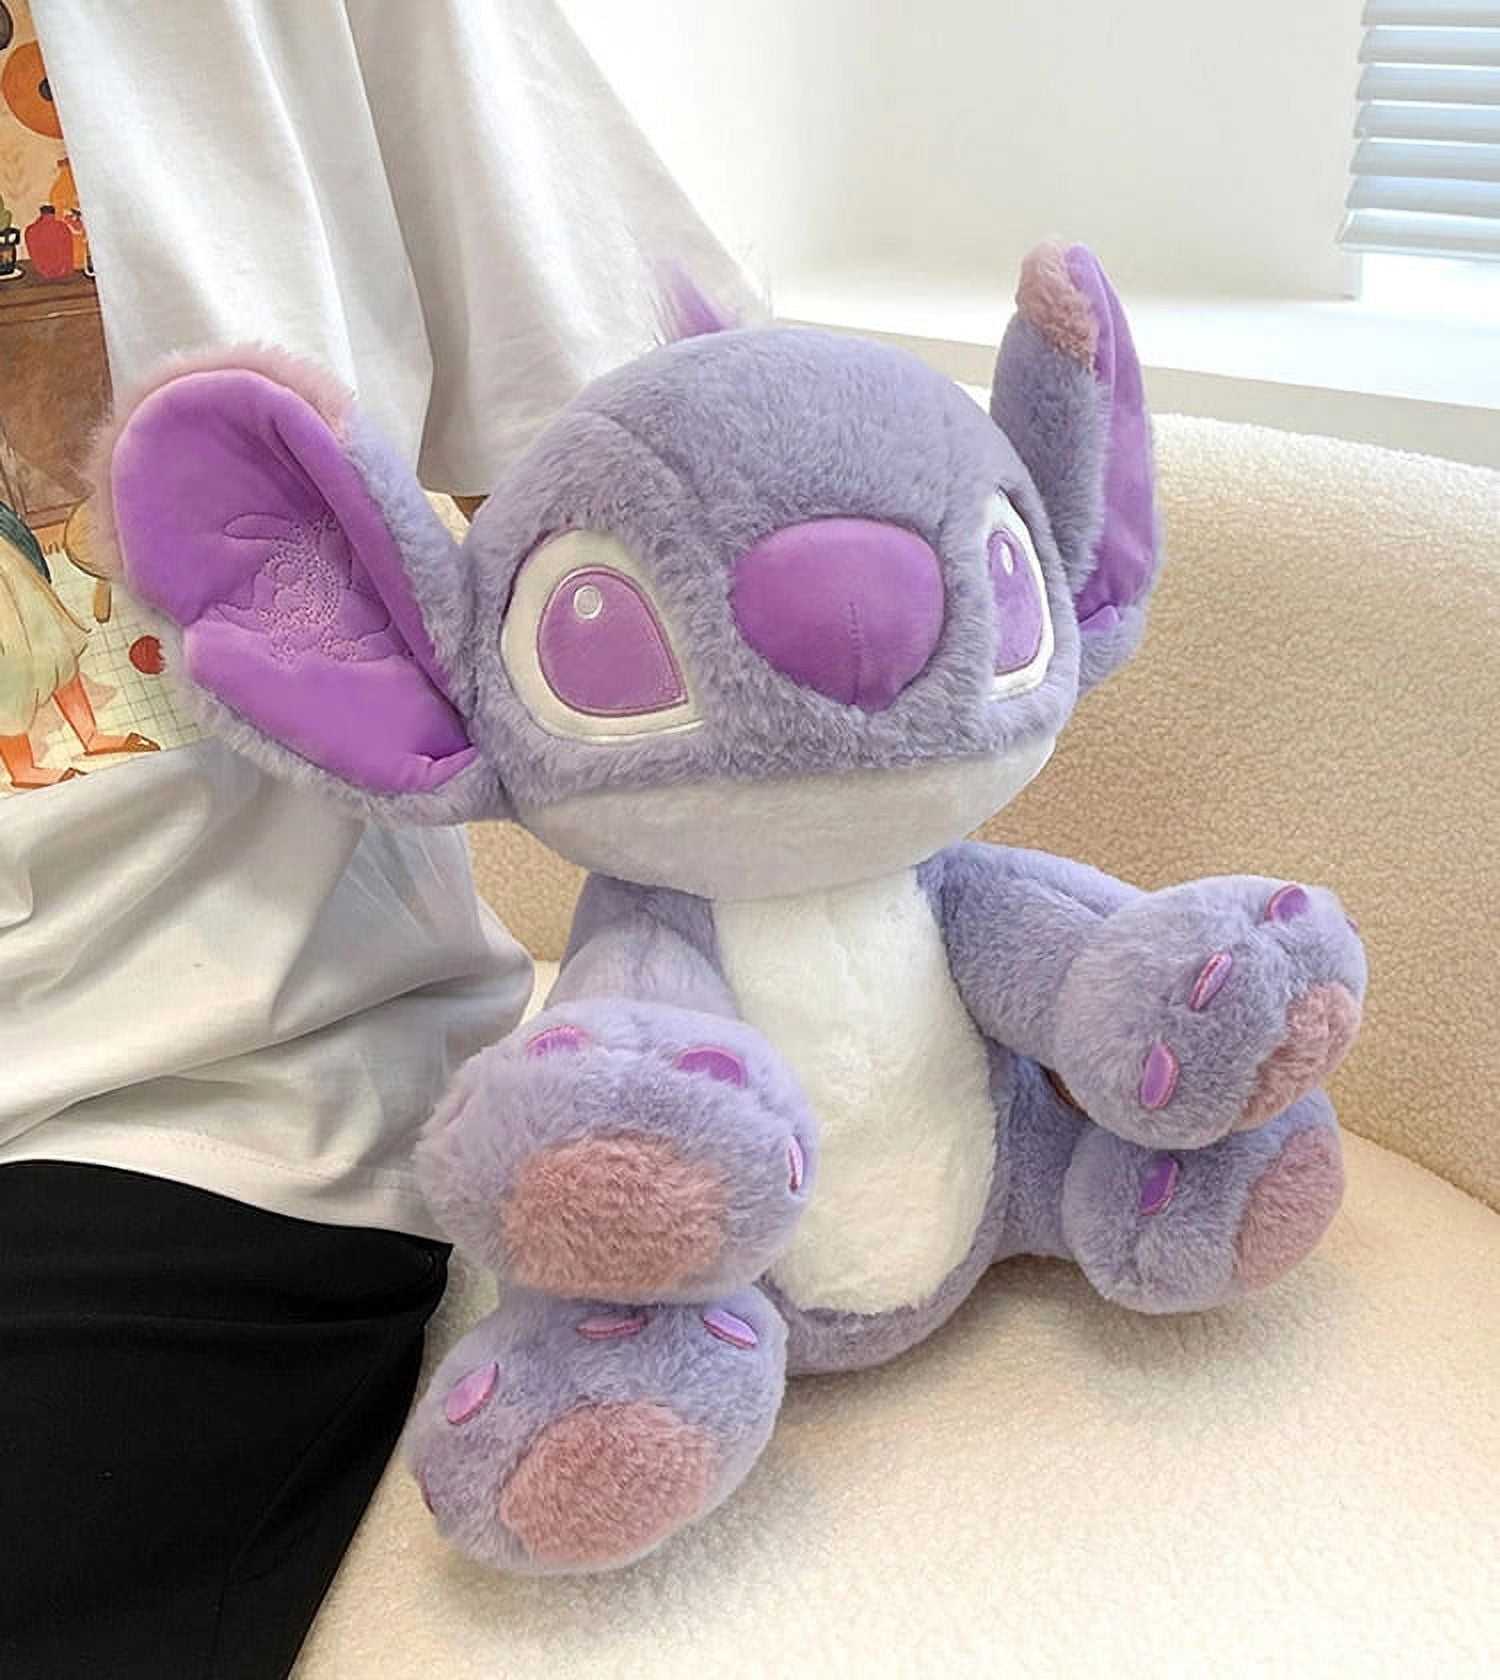 Stitch Plush Toys, 11.8 inch Purple Lilo & Stitch Stuffed Dolls, Purple Stitch  Gifts, Soft and Huggable, Stuffed Pillow Buddy, Stitch Gifts for Fans 